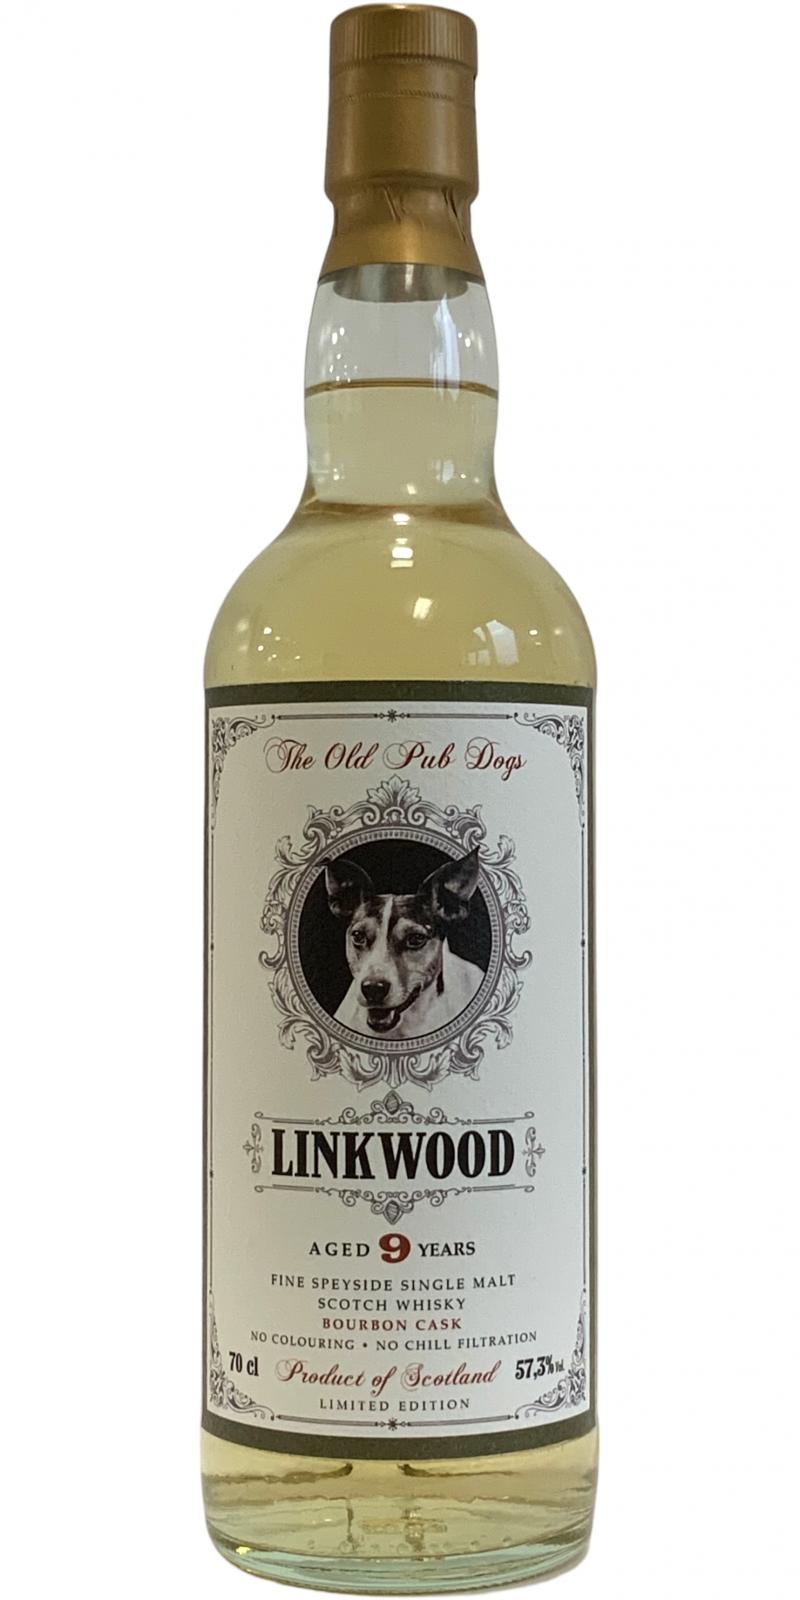 Linkwood 2010 JW The Old Pub Dogs Bourbon #1603 Globus 57.3% 700ml